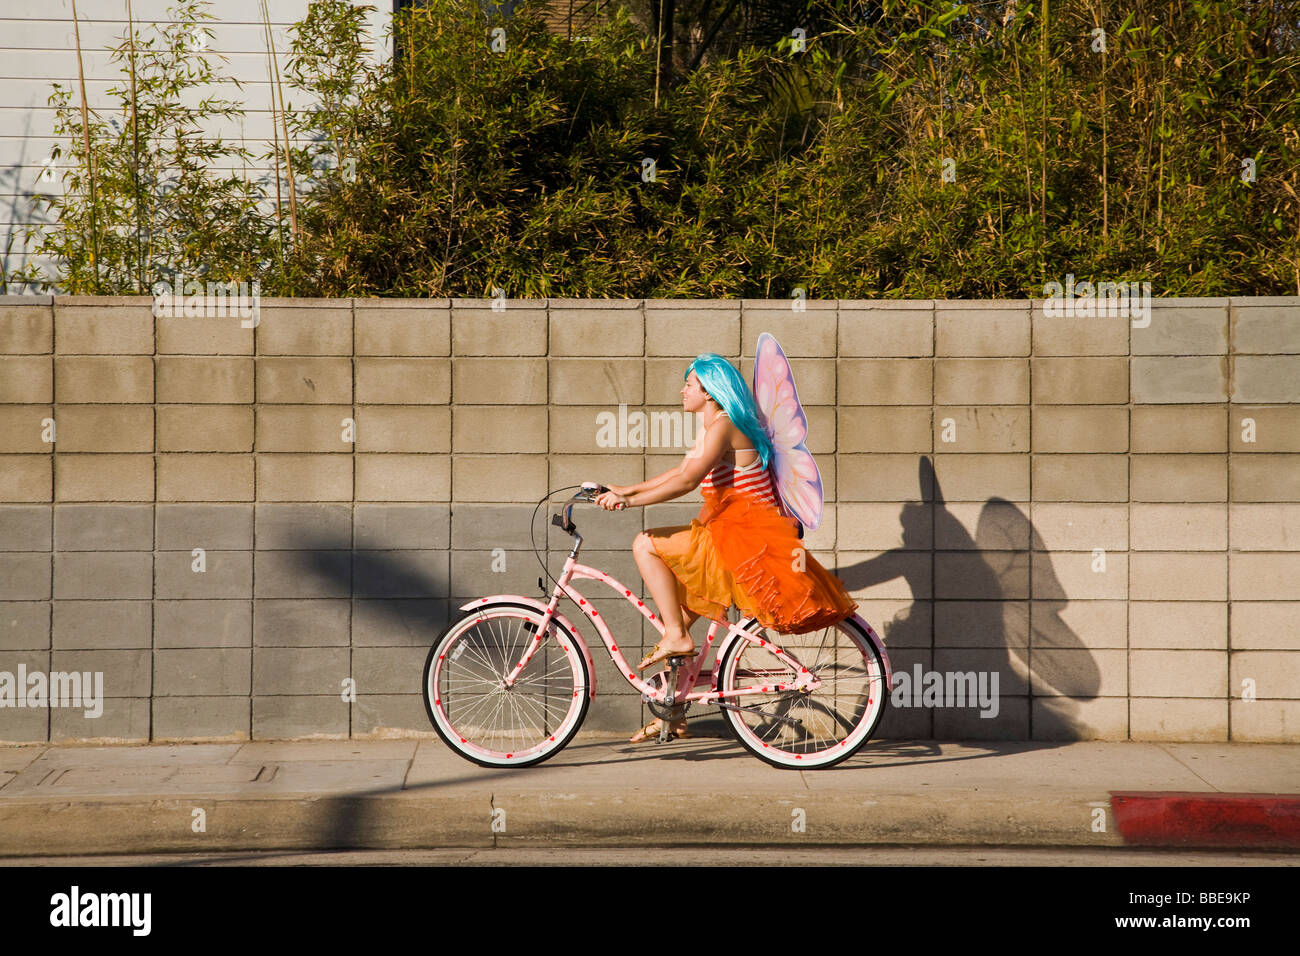 Radfahrer in einem Kostüm mit Engel Flügel Venice Beach Los Angeles County  California Vereinigten Staaten von Amerika Stockfotografie - Alamy